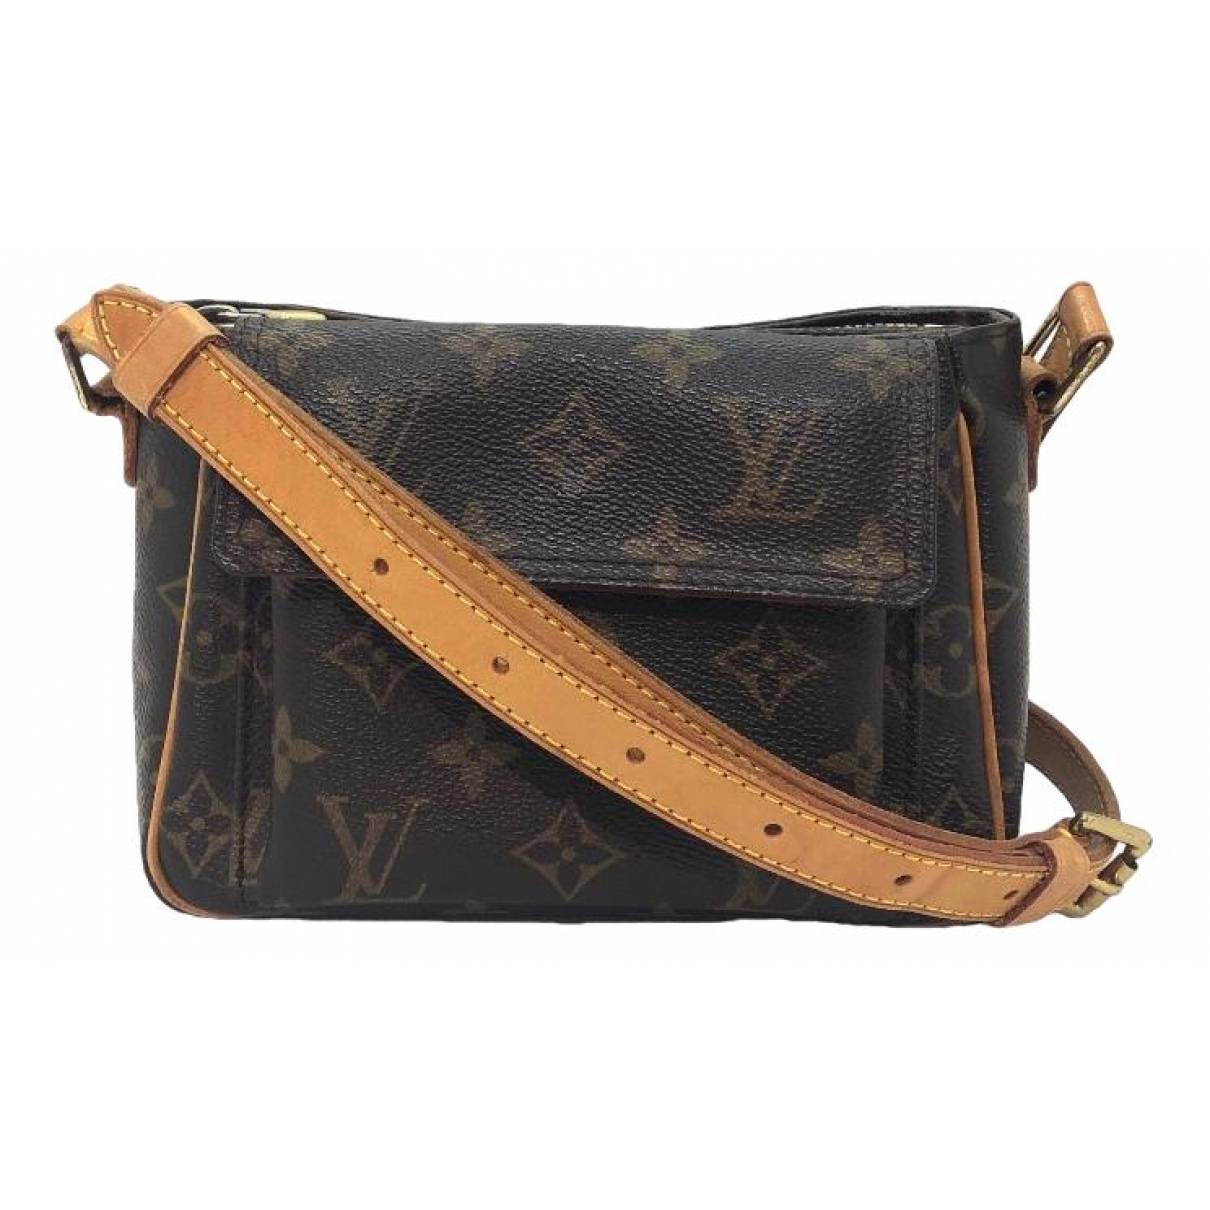 Viva cité leather handbag Louis Vuitton Brown in Leather - 35276742